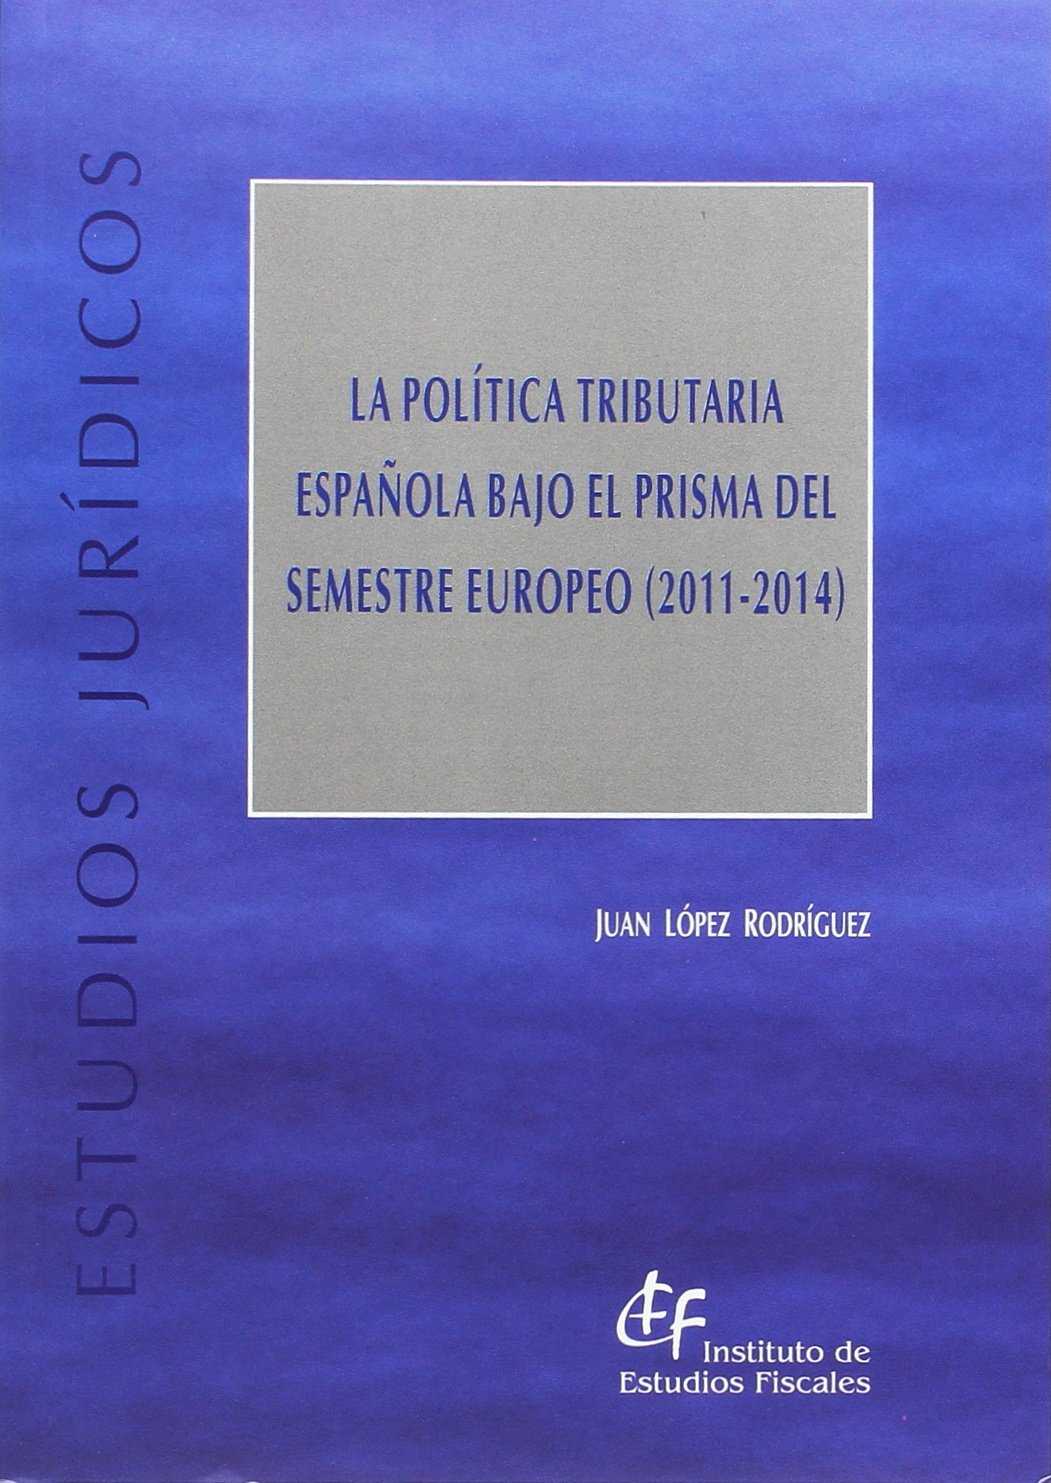 La política tributaria española bajo el prisma del semestre europeo (2011-2014)